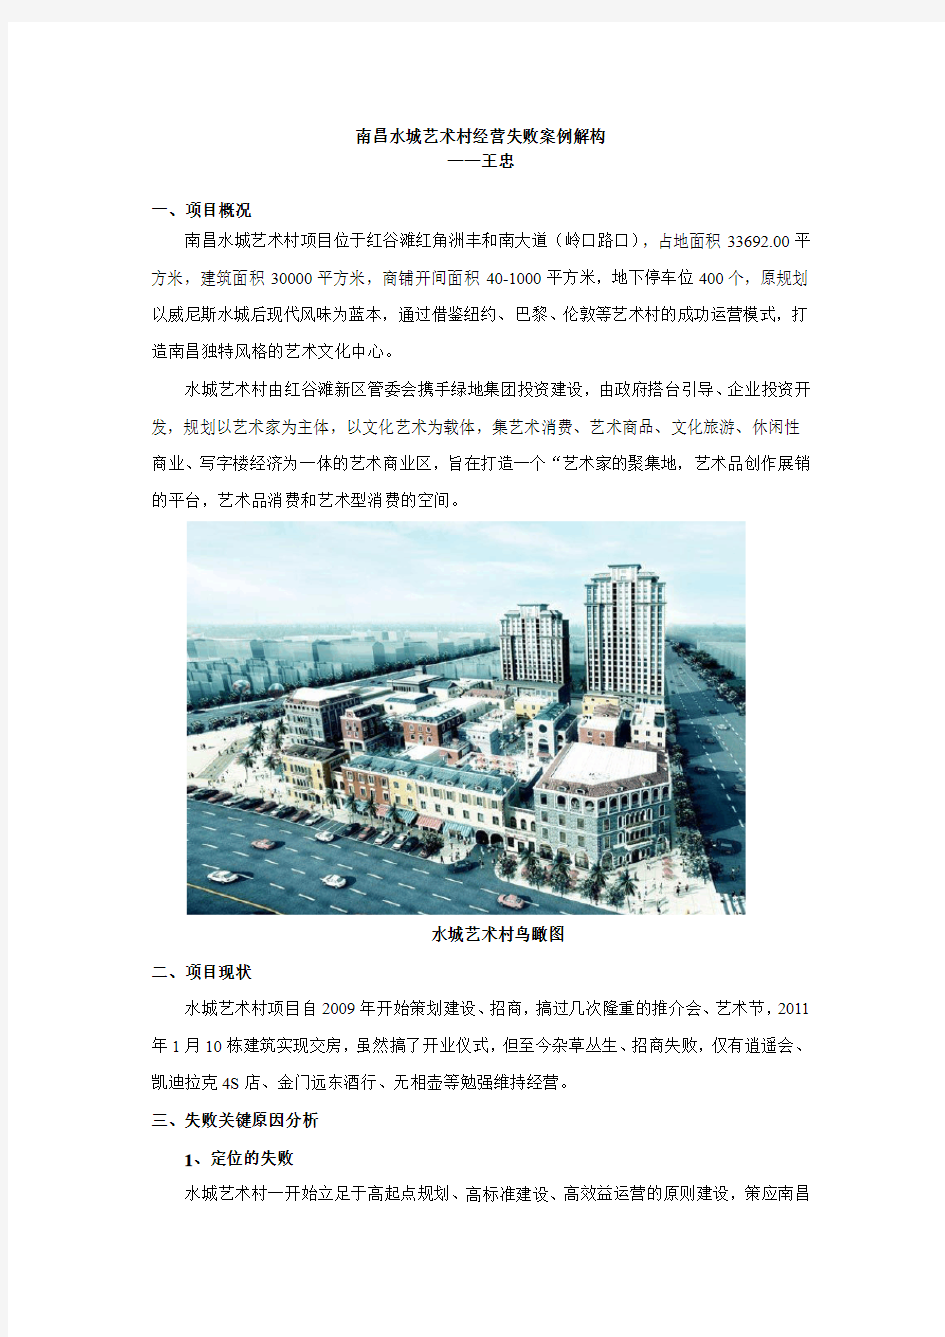 绿地集团南昌水城艺术村商业项目经营失败案例解构